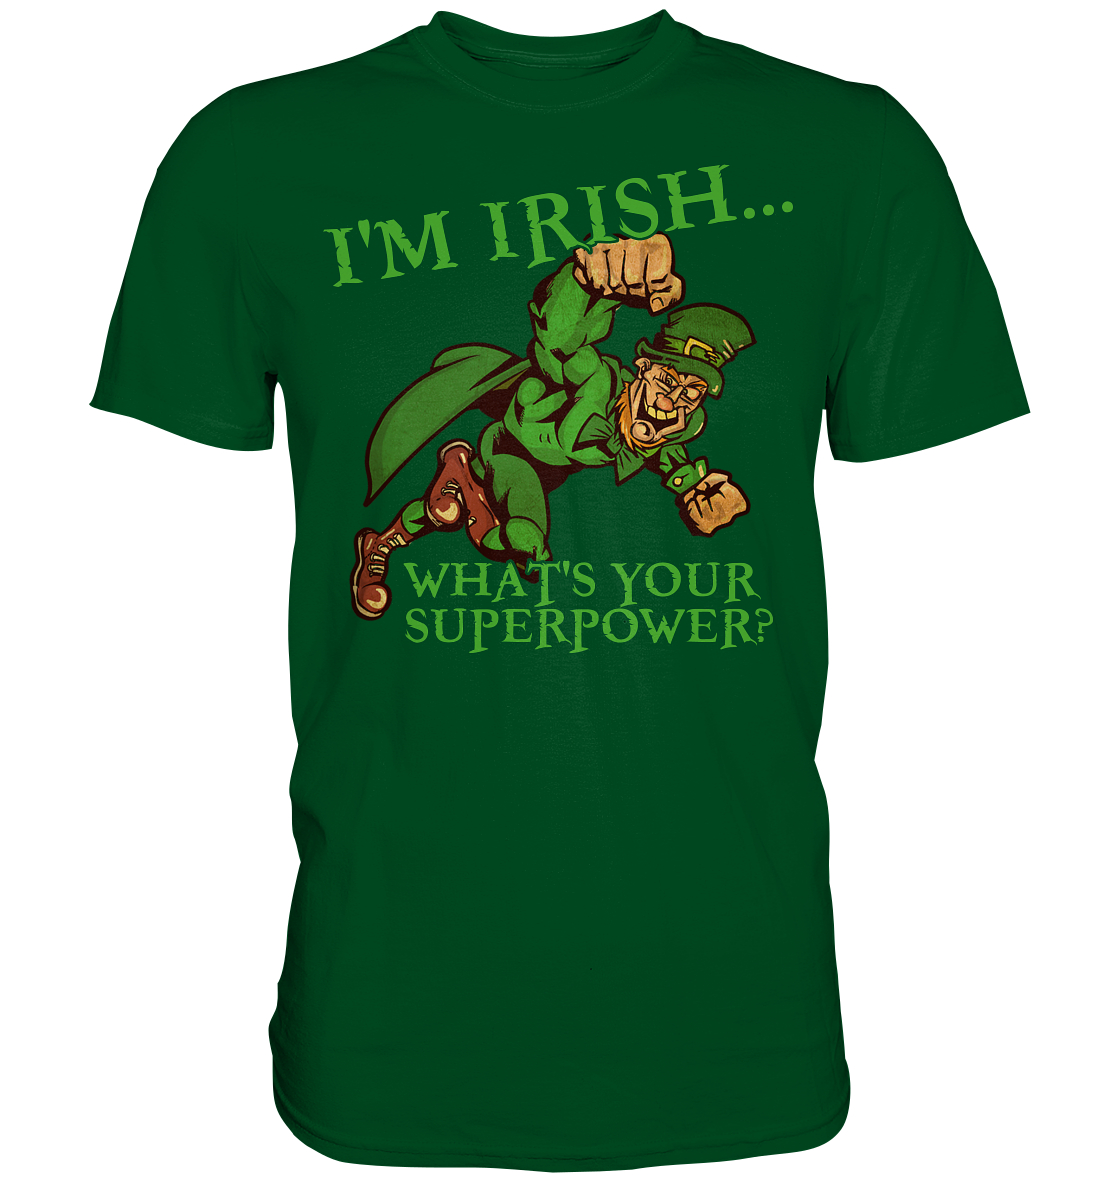 I'm Irish "What's Your Superpower?" - Premium Shirt